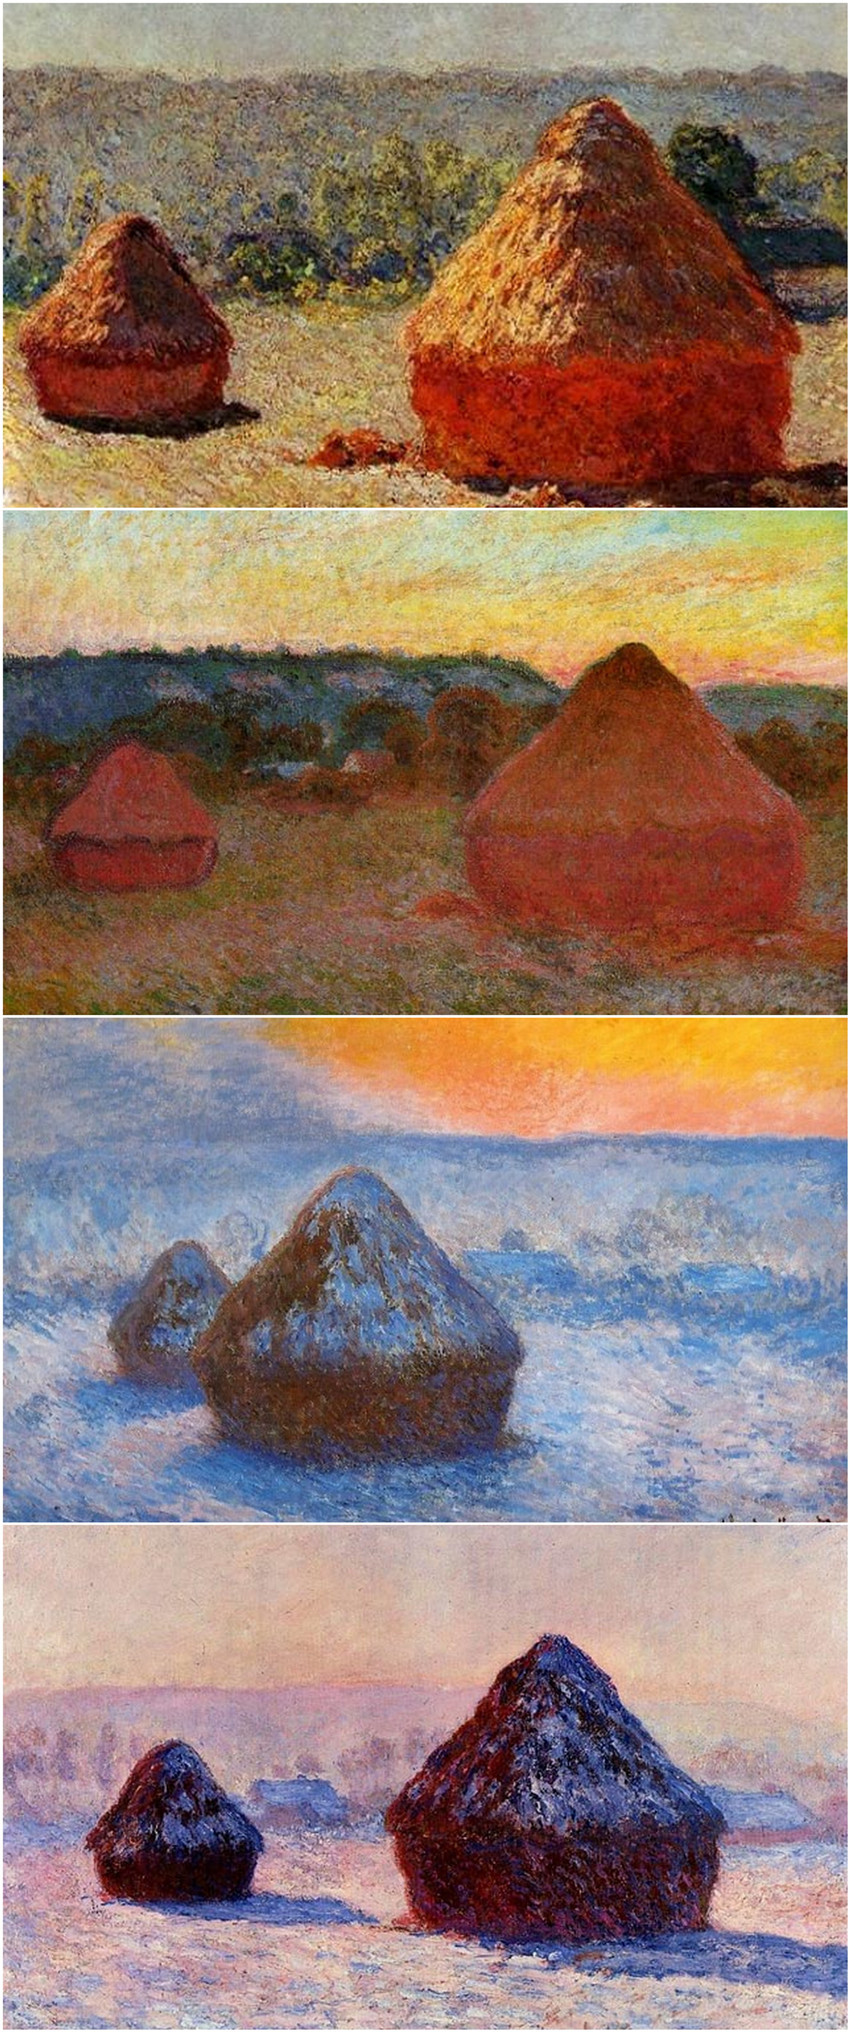 《干草垛》莫奈,1890-91年间,组画之四.